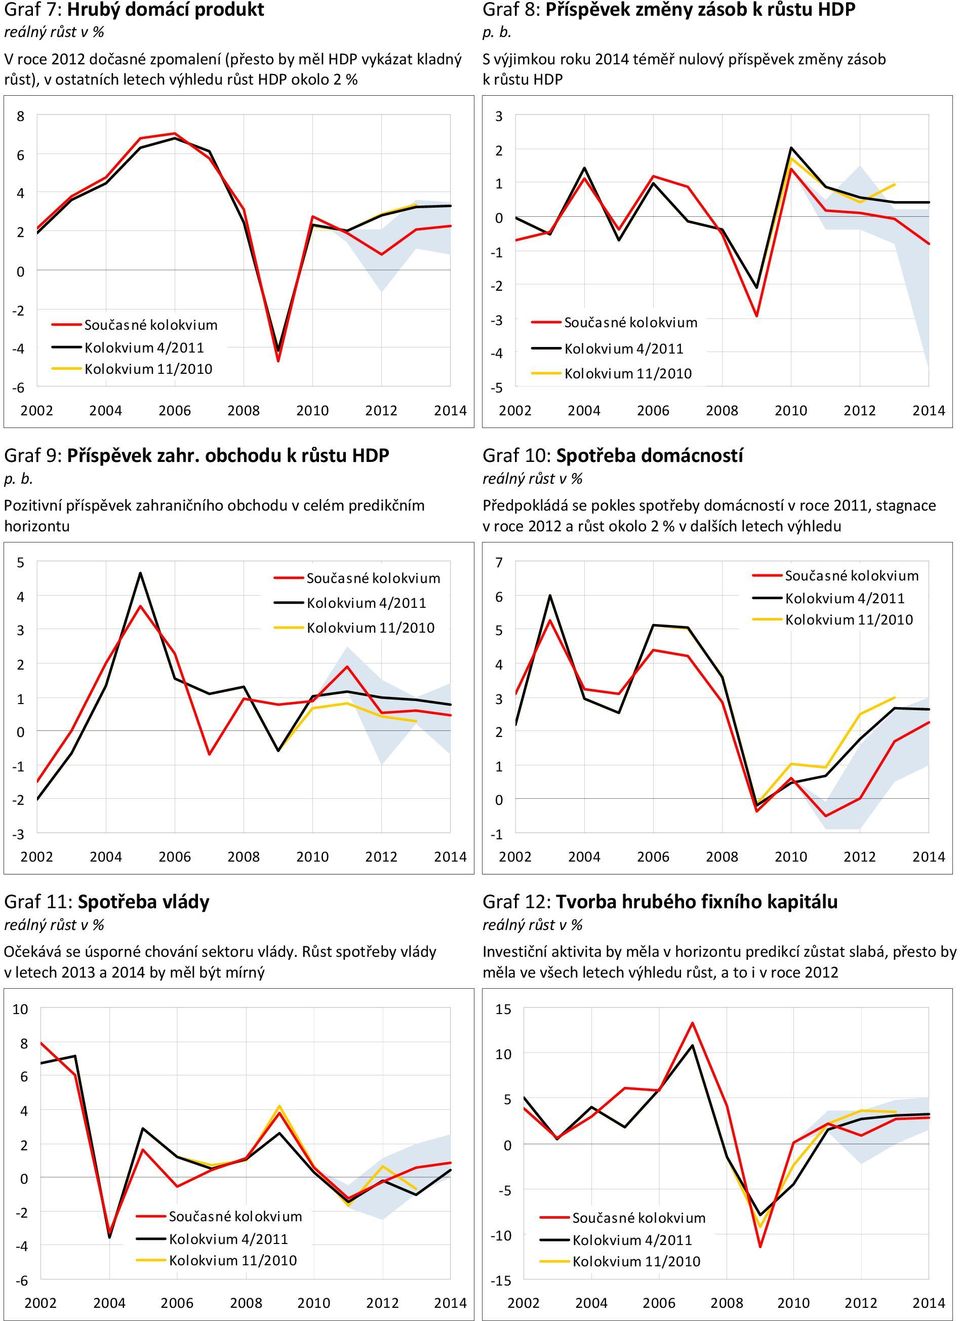 obchodu k růstu HDP Graf : Spotřeba domácností p. b.